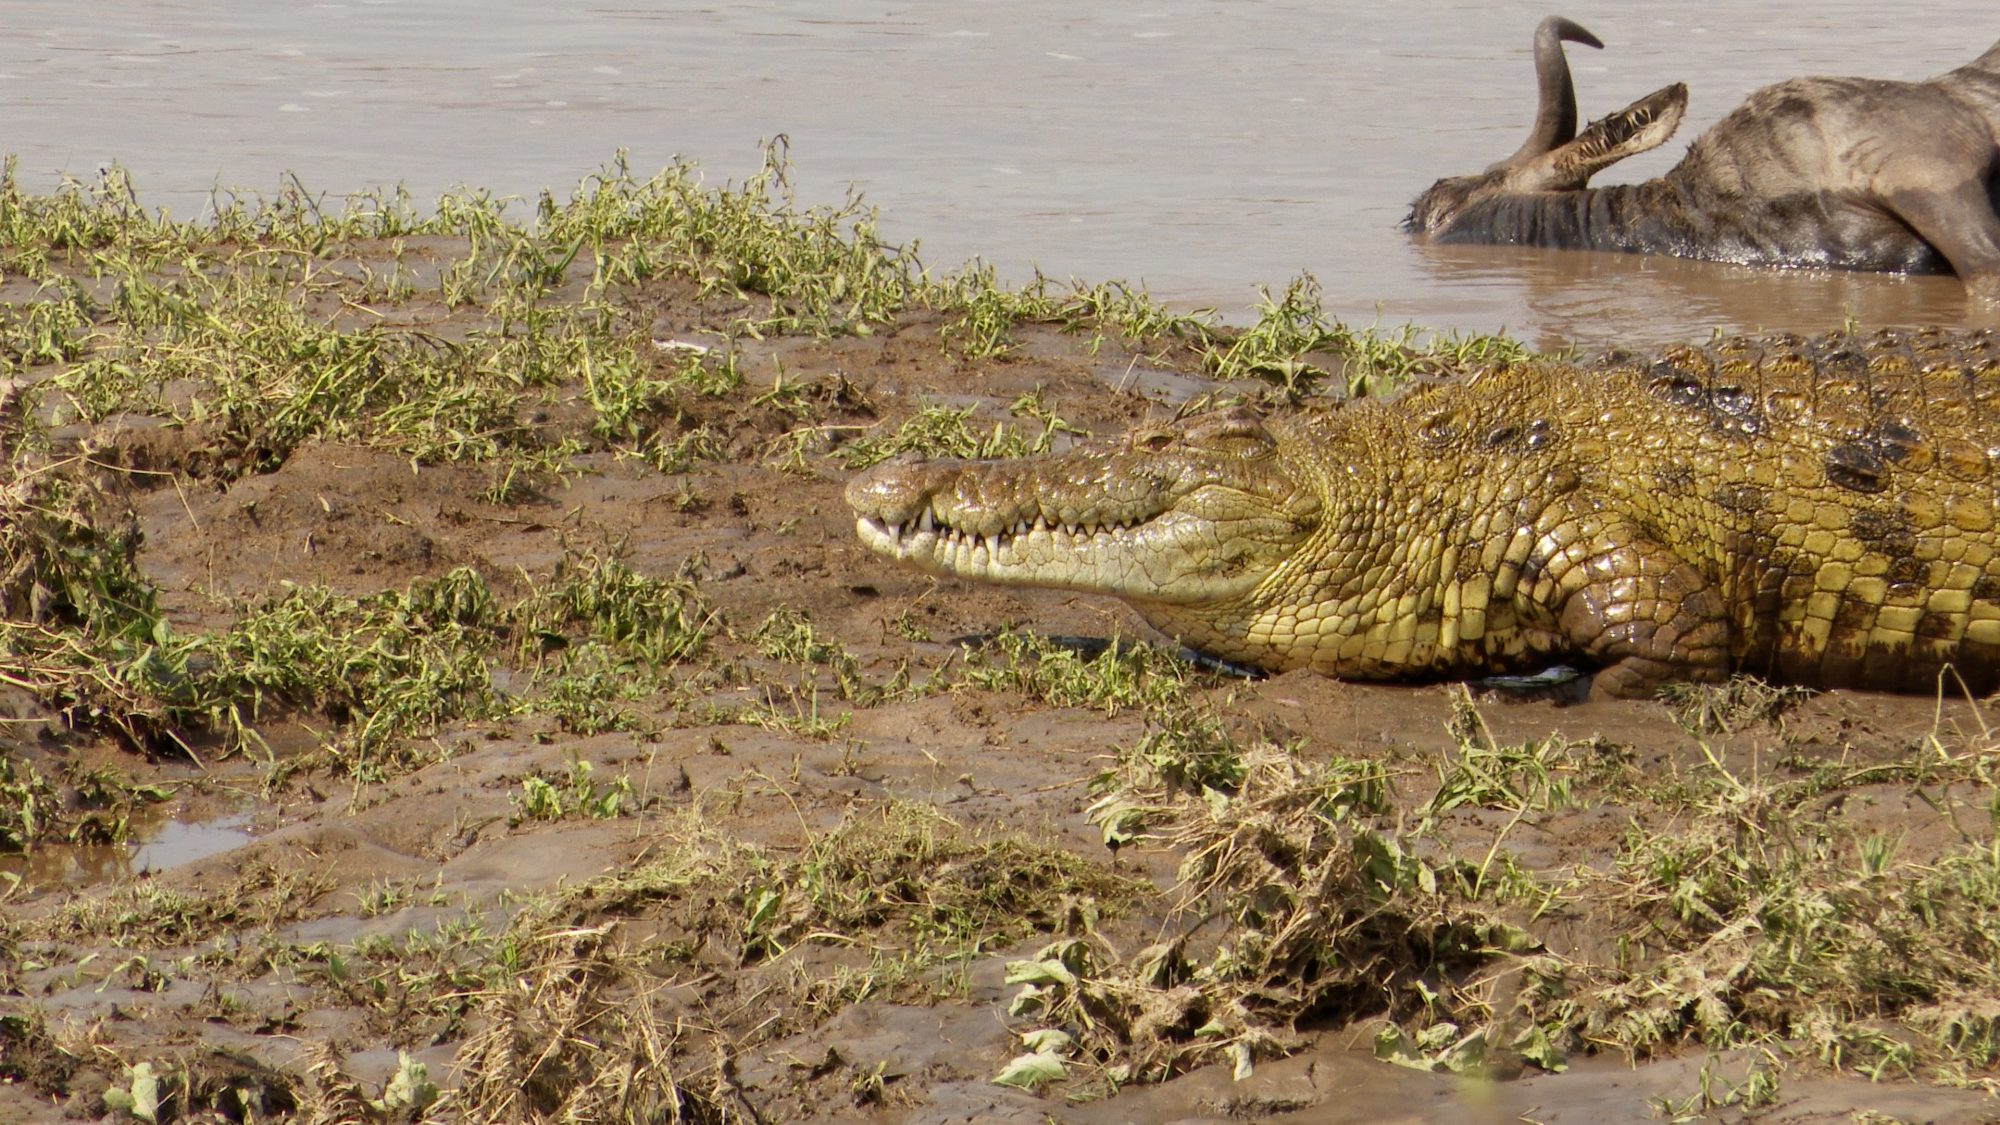 Crocodiles kill Wildebeest in the Mara River – Tanzania, 2019